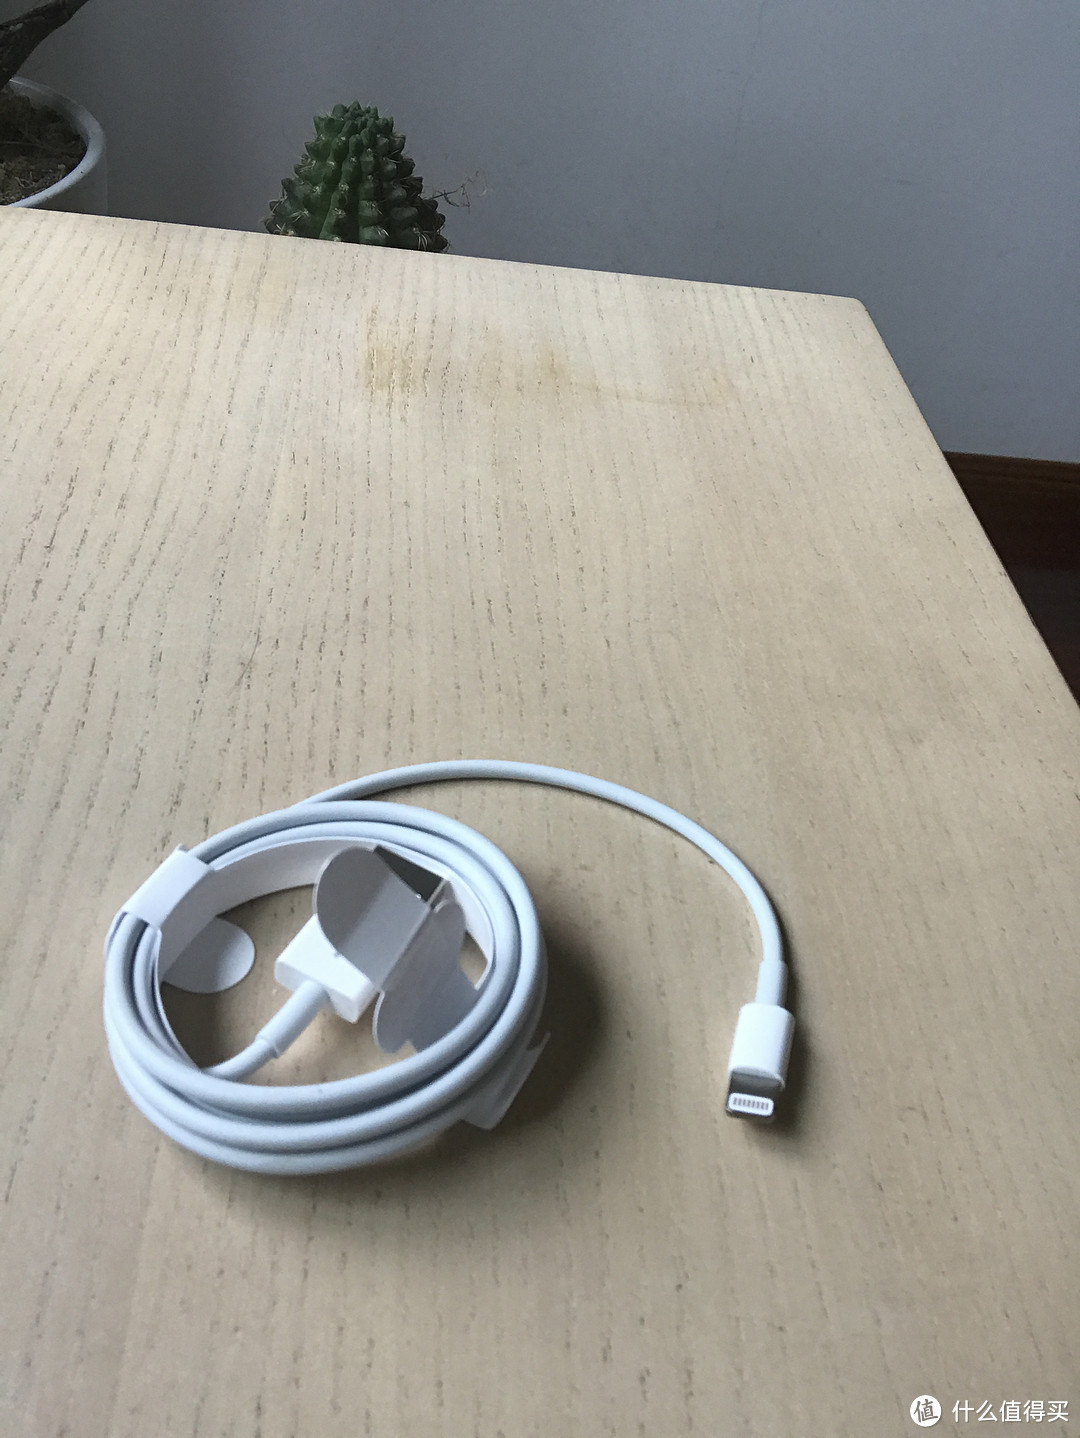 Apple 苹果 iPhone 7 玫瑰金 128G 手机 开箱